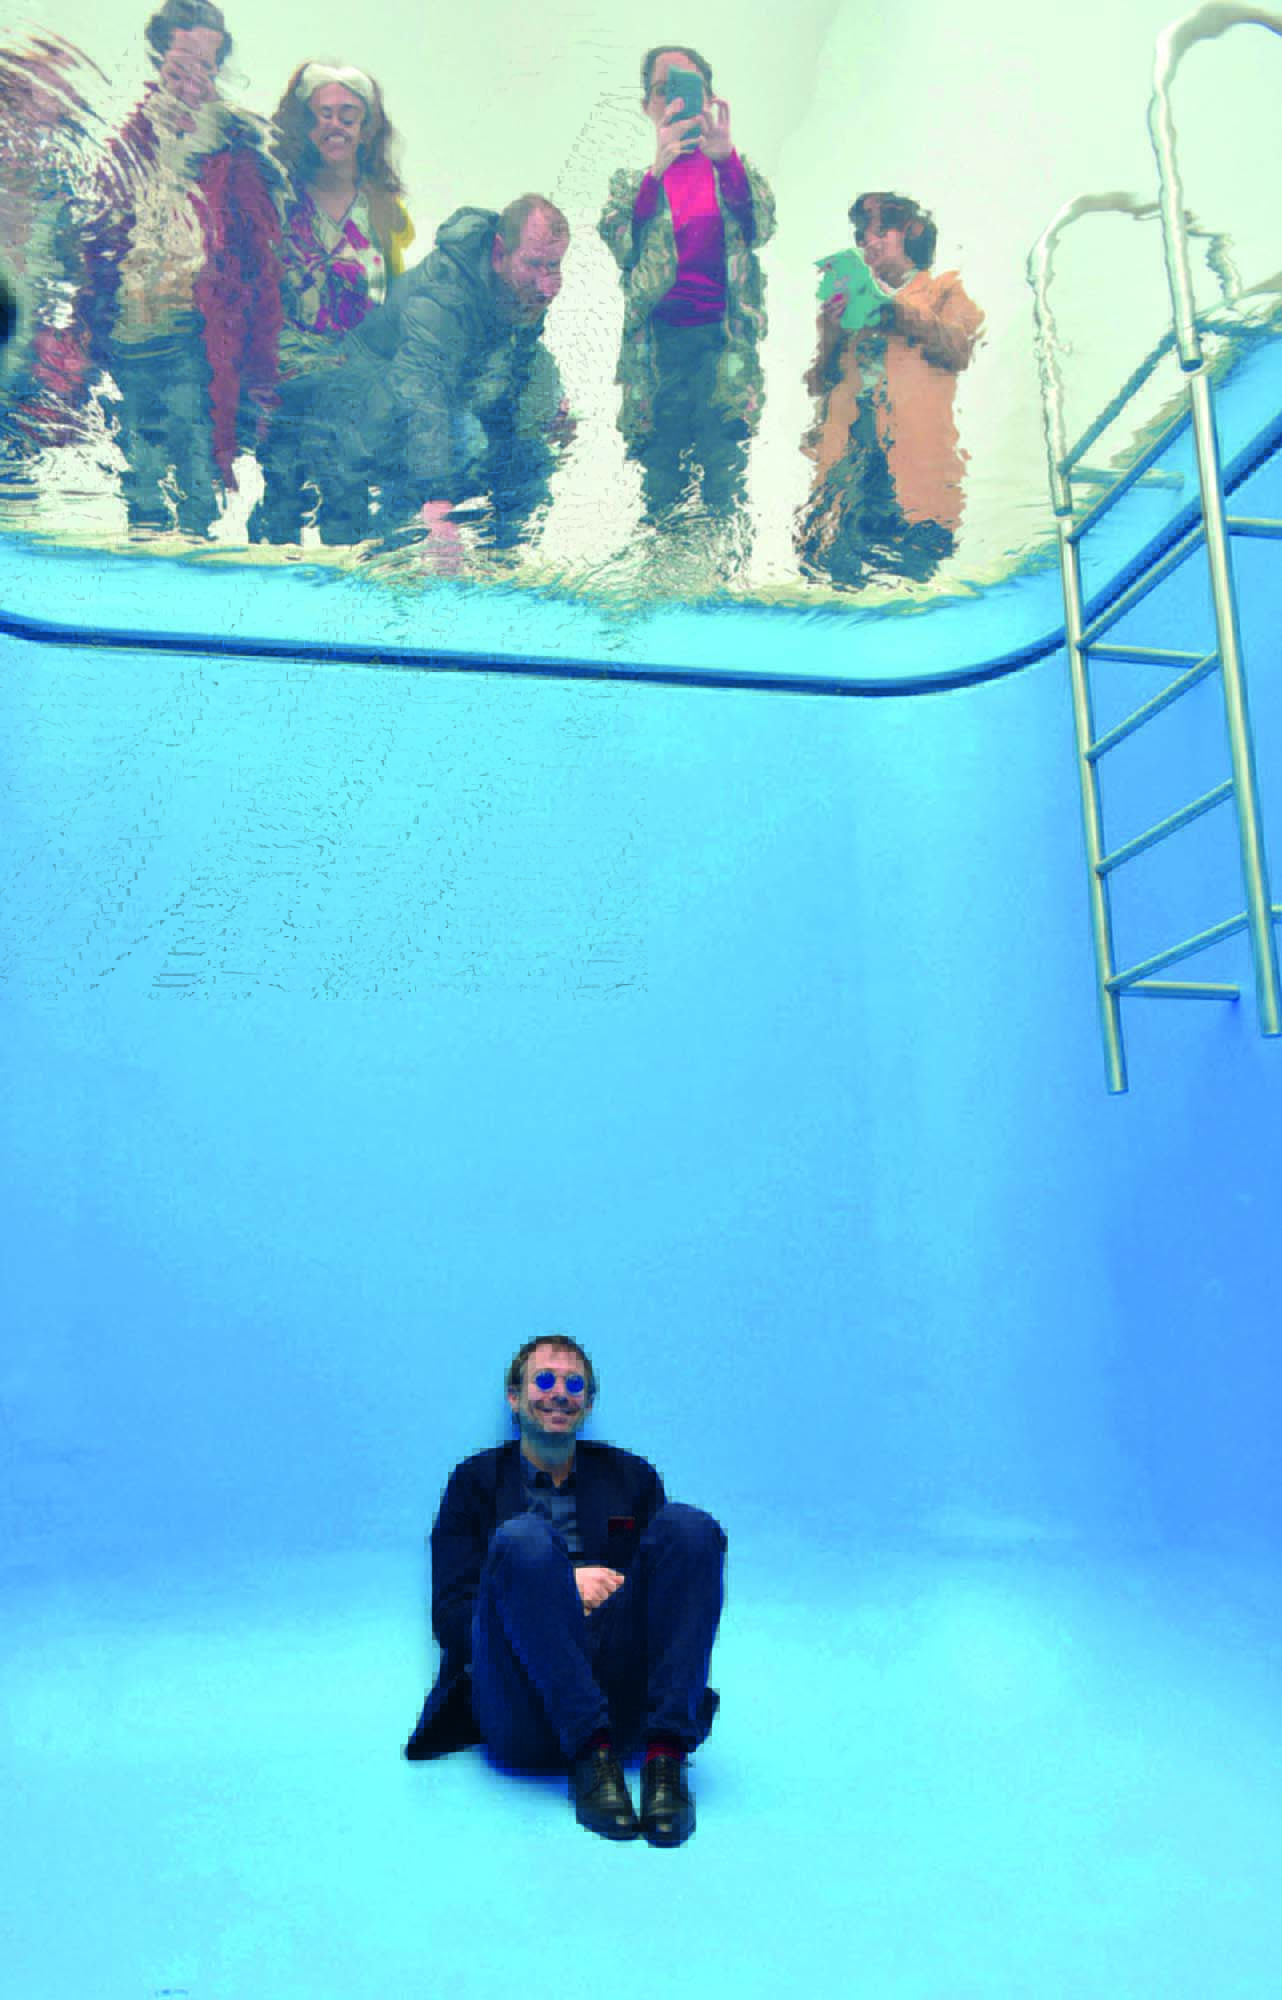 Imagem mostra homem de óculos escuros sentado no fundo de uma piscina, vazia. Acima, pessoas olham para baixo, entre corpo d'água.